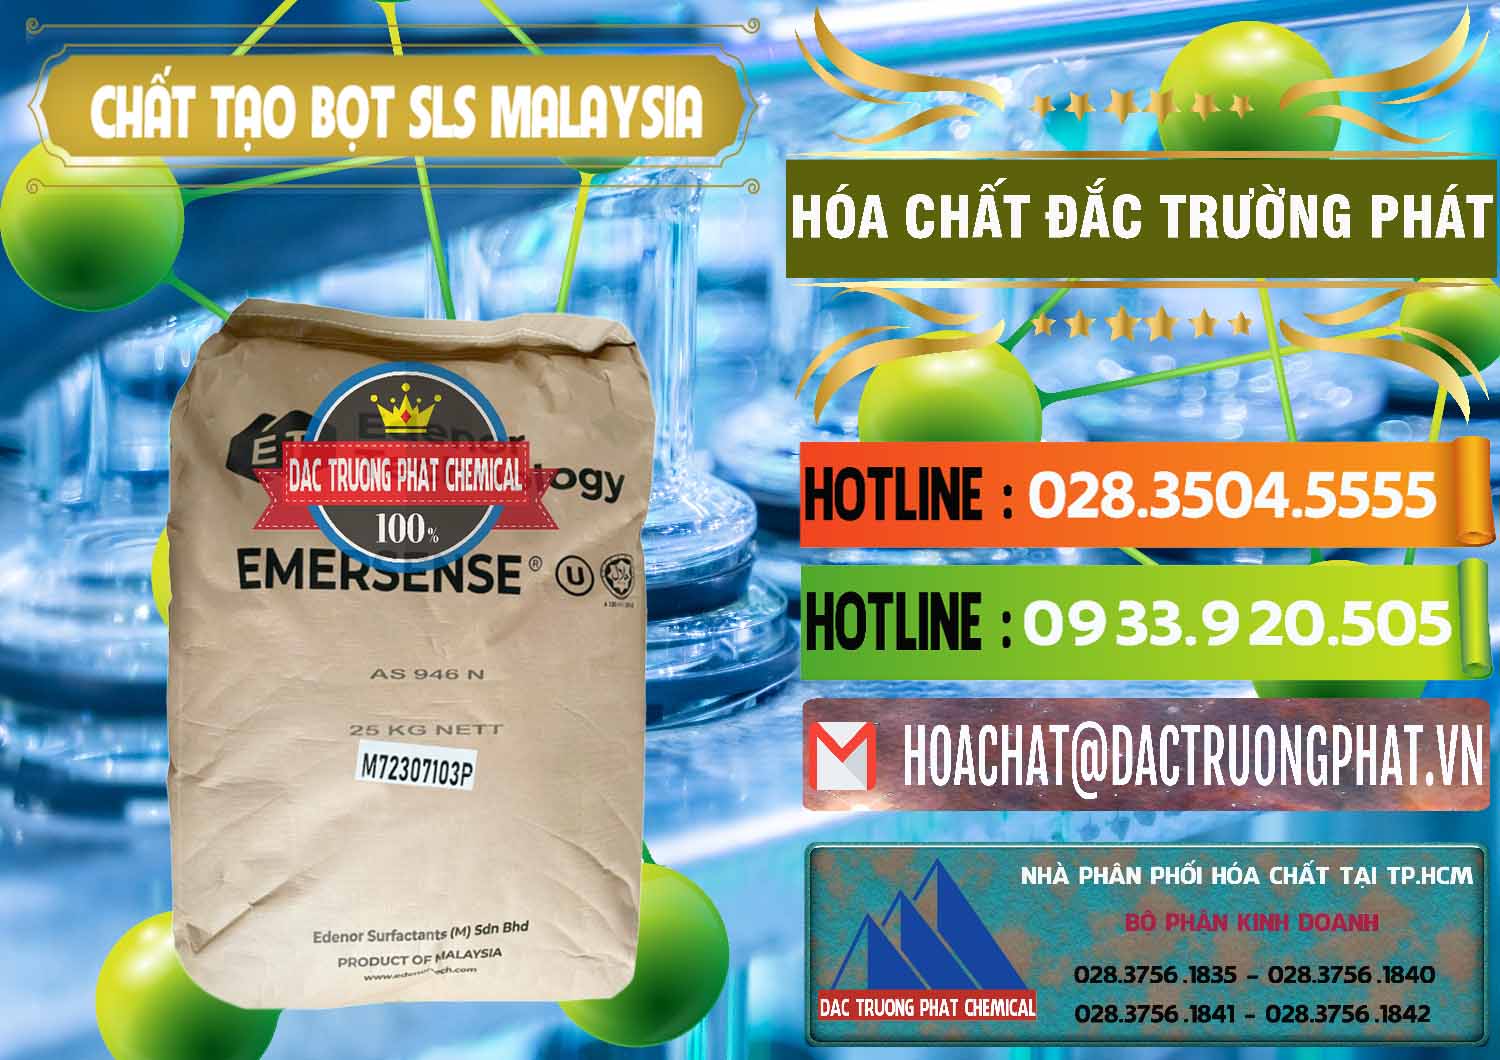 Nơi chuyên bán & cung cấp Chất Tạo Bọt SLS Emersense Mã Lai Malaysia - 0381 - Công ty phân phối ( cung ứng ) hóa chất tại TP.HCM - cungcaphoachat.com.vn